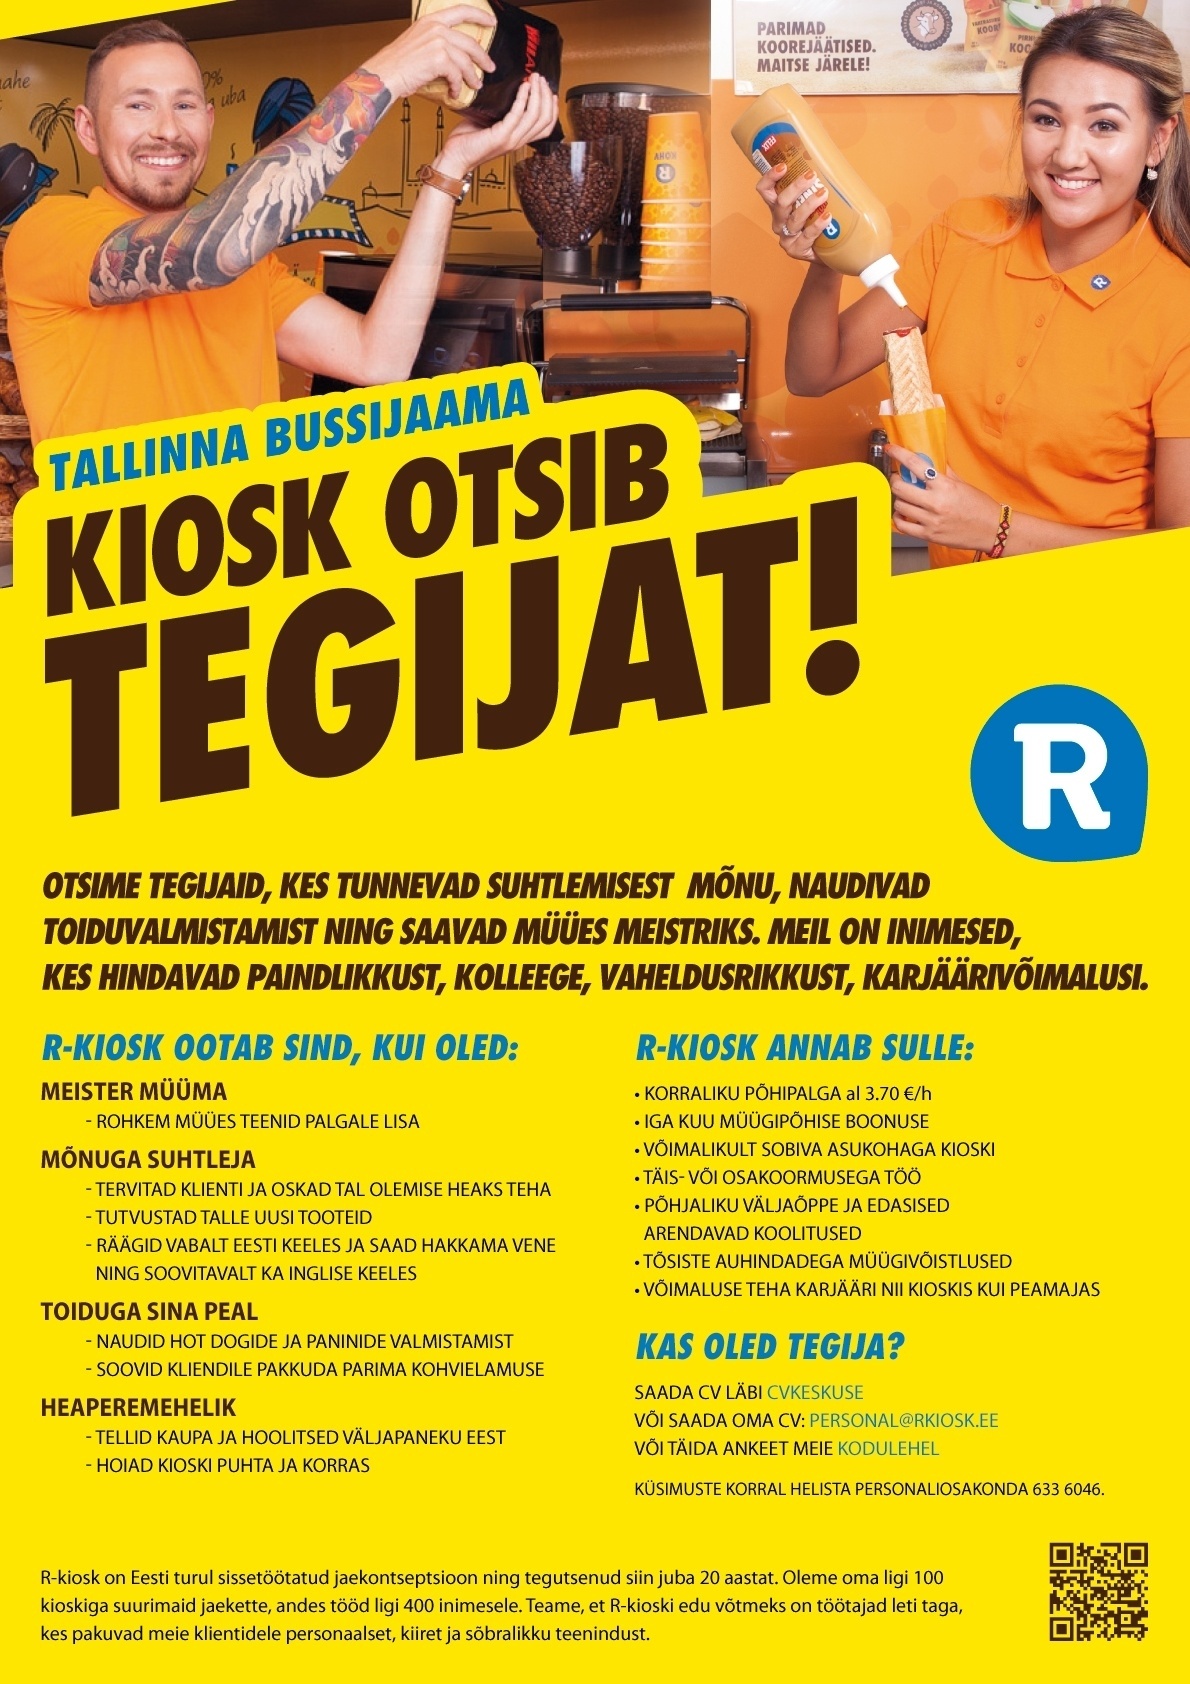 AS R-Kiosk Estonia Klienditeenindaja Tallinna Bussijaama R-kioskisse